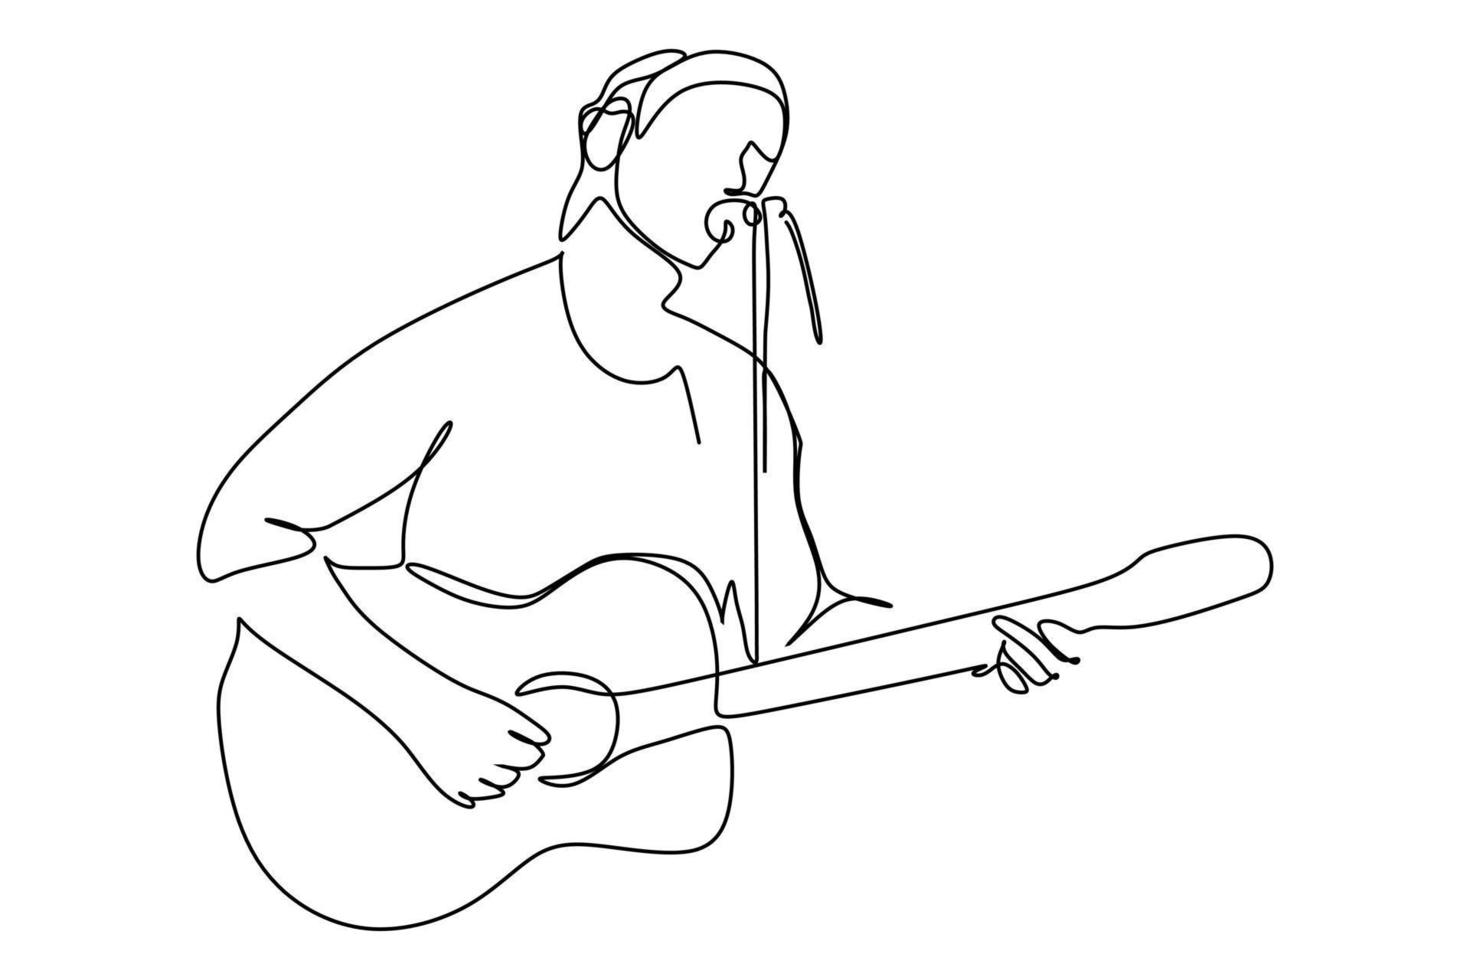 dessin en trait continu d'un chanteur masculin chanter une chanson et jouer de la musique. illustration vectorielle du concept de performance de l'artiste musicien vecteur